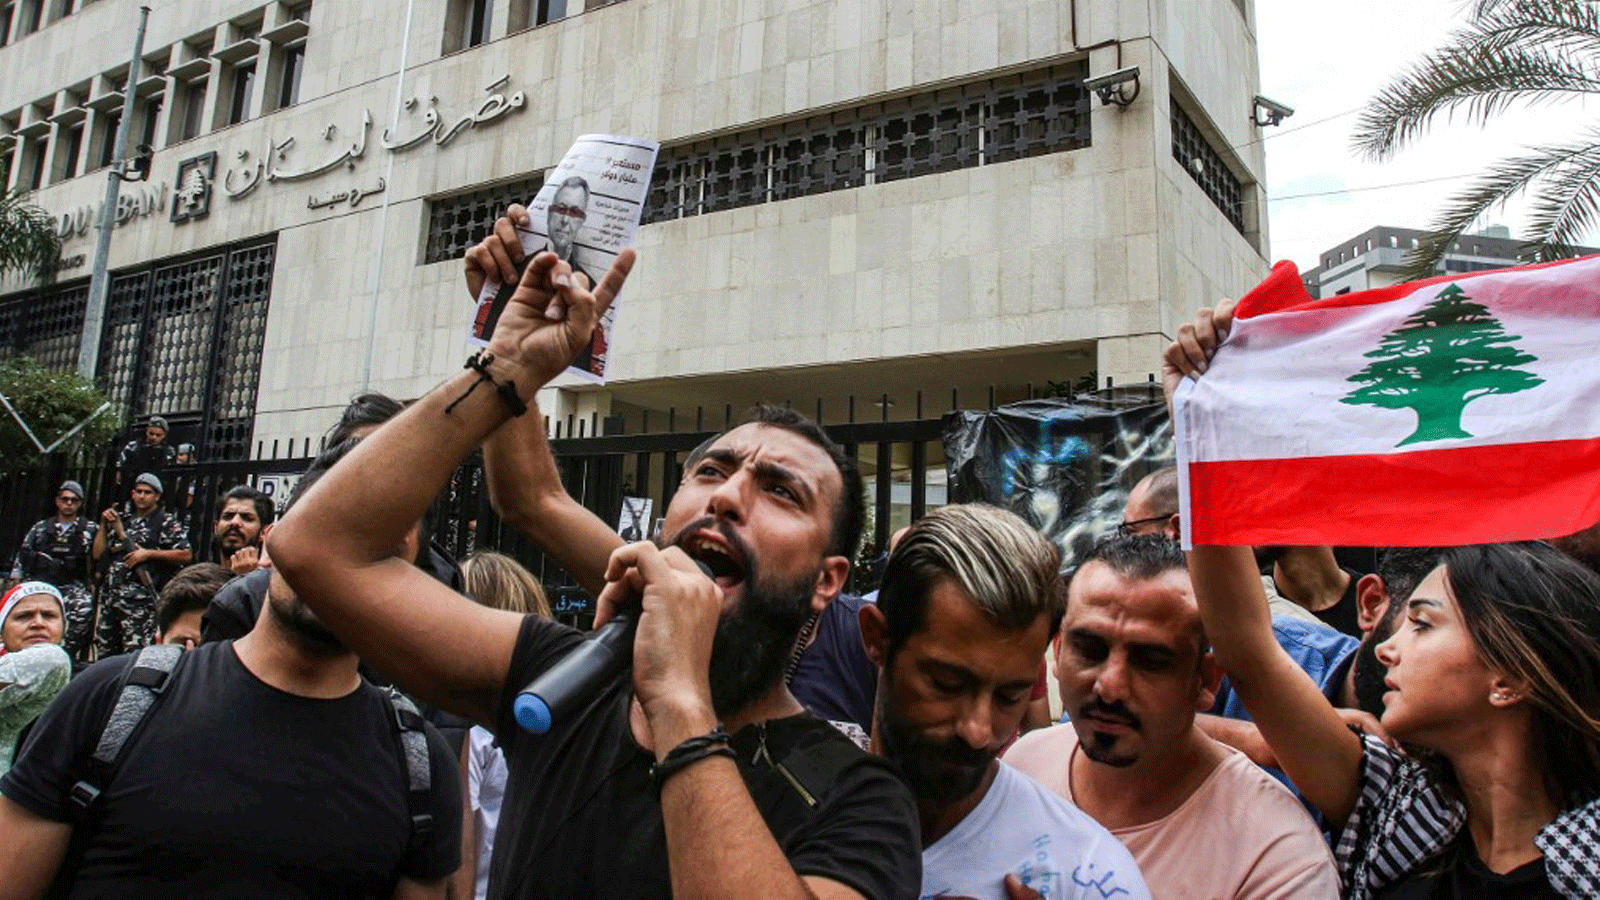 متظاهرون لبنانيون يرفعون لافتات تندد بوزير المالية السابق فؤاد السنيورة أثناء تجمعهم في اليوم الثامن للاحتجاج على زيادة الضرائب والفساد الرسمي خارج فرع البنك في مدينة صيدا الجنوبية. 24 تشرين الأول/أكتوبر 2019.